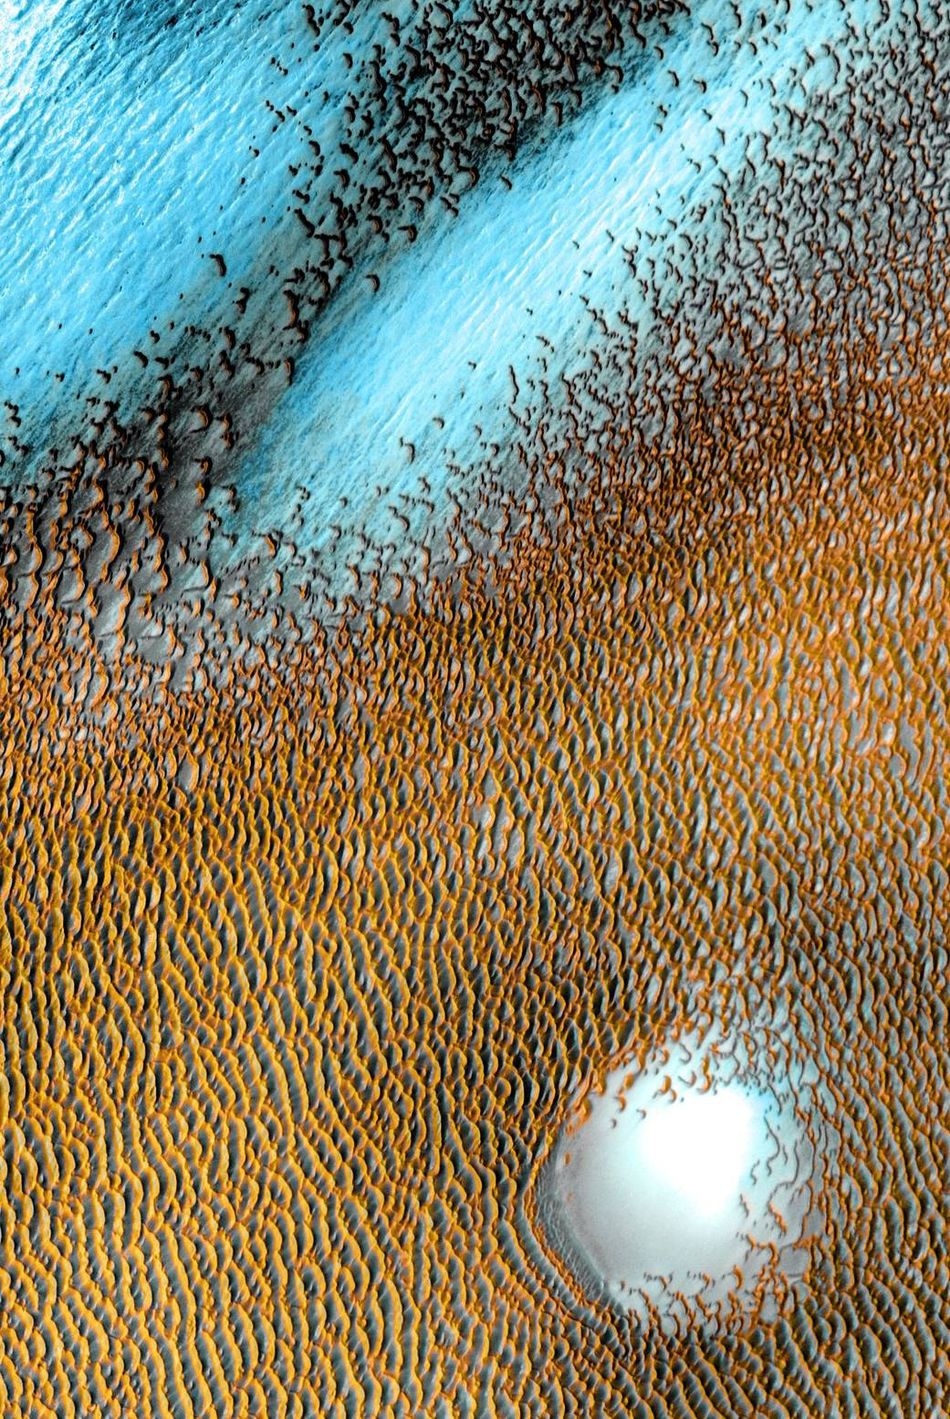 Cồn cát màu xanh đẹp mê người trên sao Hỏa